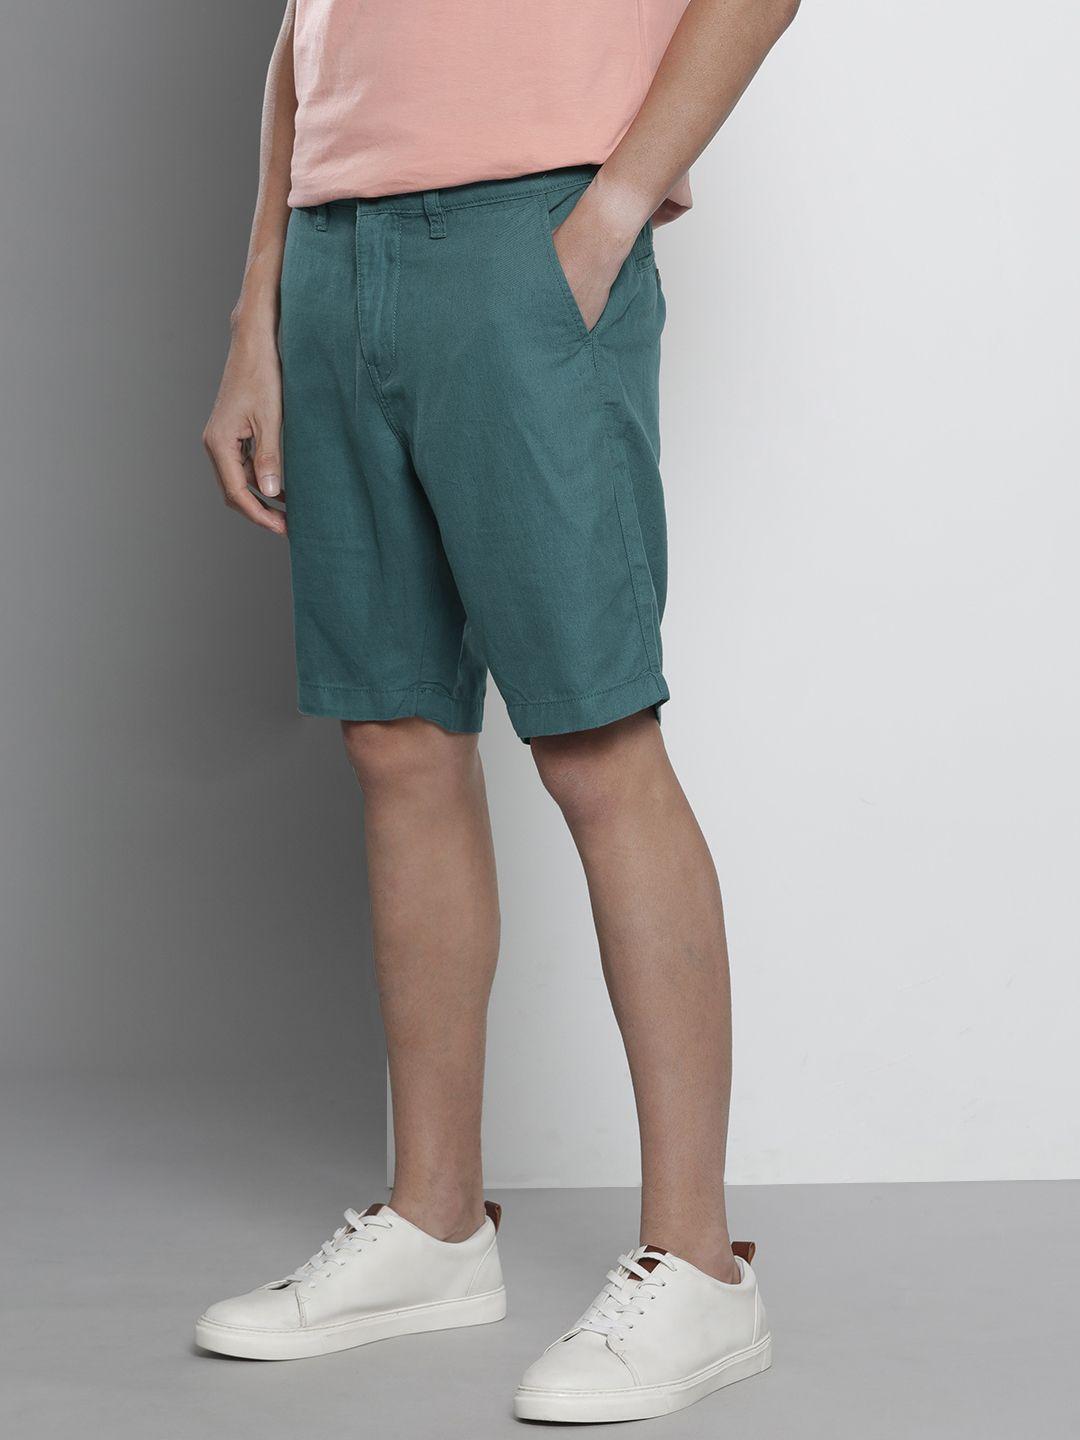 nautica-men-teal-blue-solid-slim-fit-linen-cotton-shorts